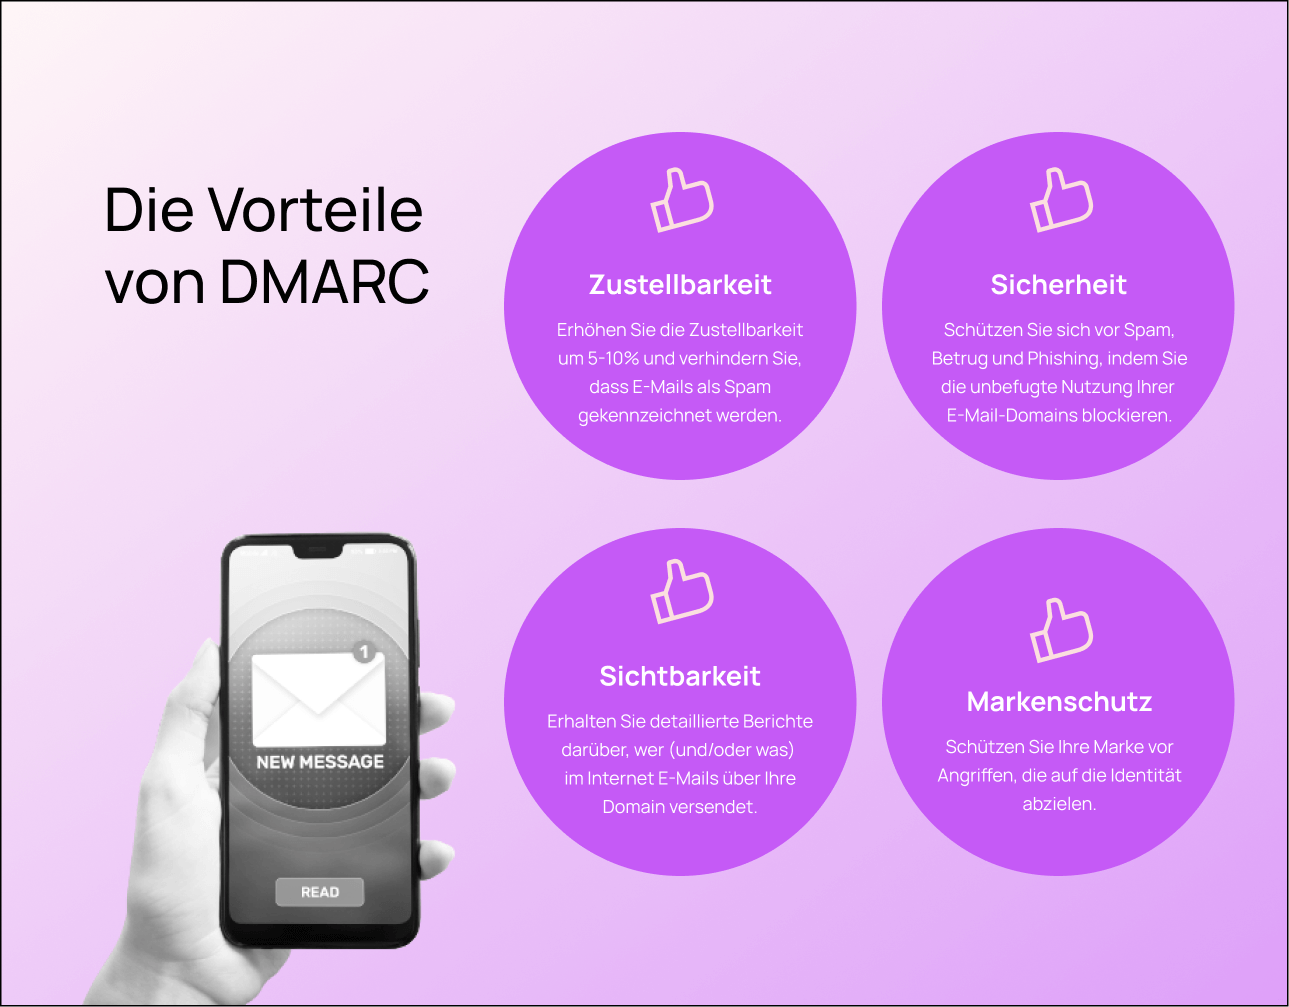 DMARC verbessert die Zustellbarkeit durch Authentifizierung von E-Mails, erhöht die Transparenz durch Berichtsmechanismen und gewährleistet Markenschutz und Sicherheit durch die Eindämmung von Spoofing- und Phishing-Angriffen.